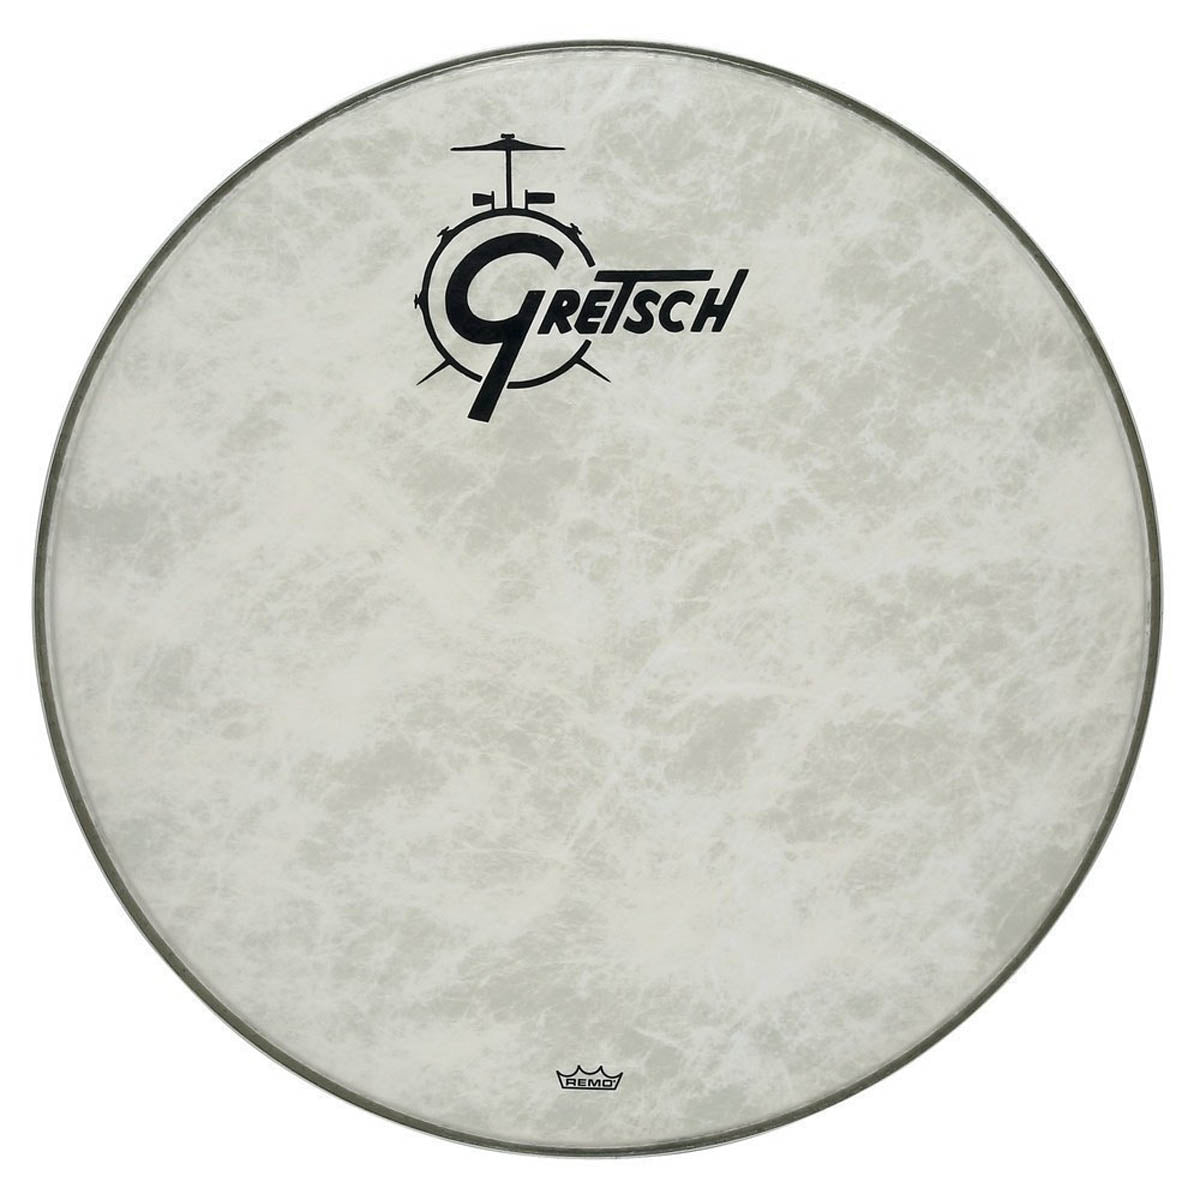 Gretsch USA Bass Drum Logo Heads - Fiberskyn Ambassador